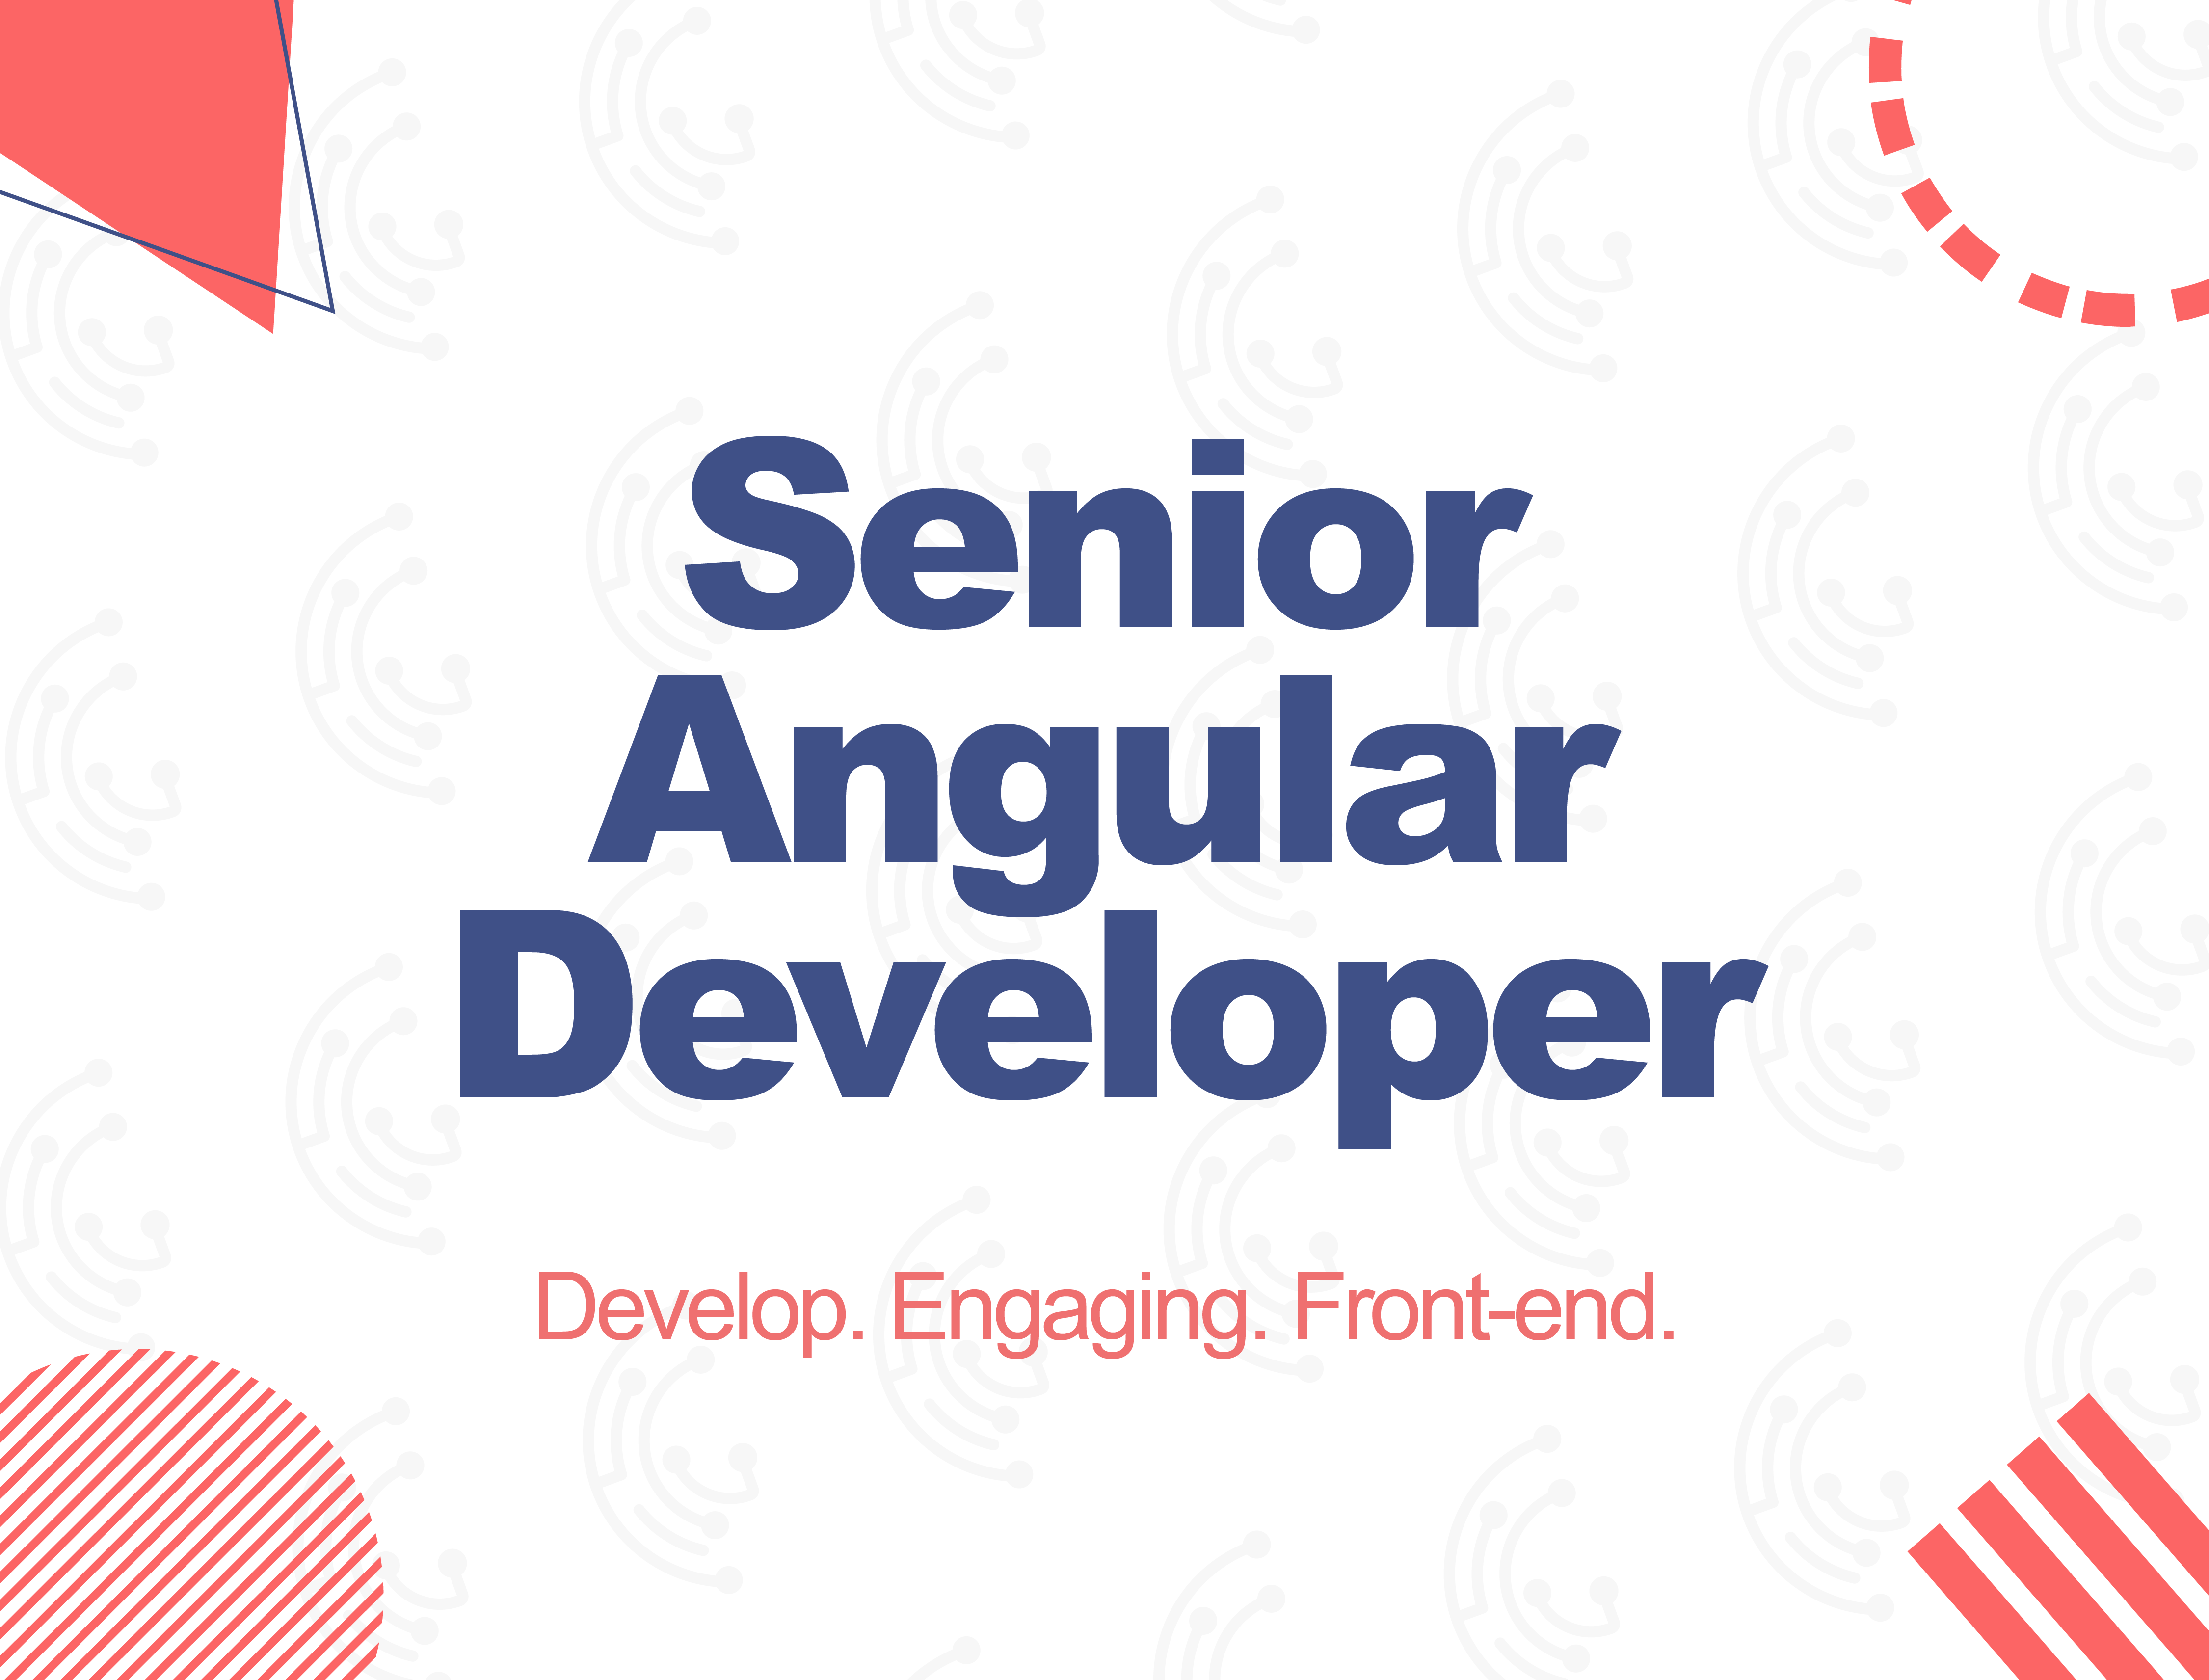 Senior Angular Developer